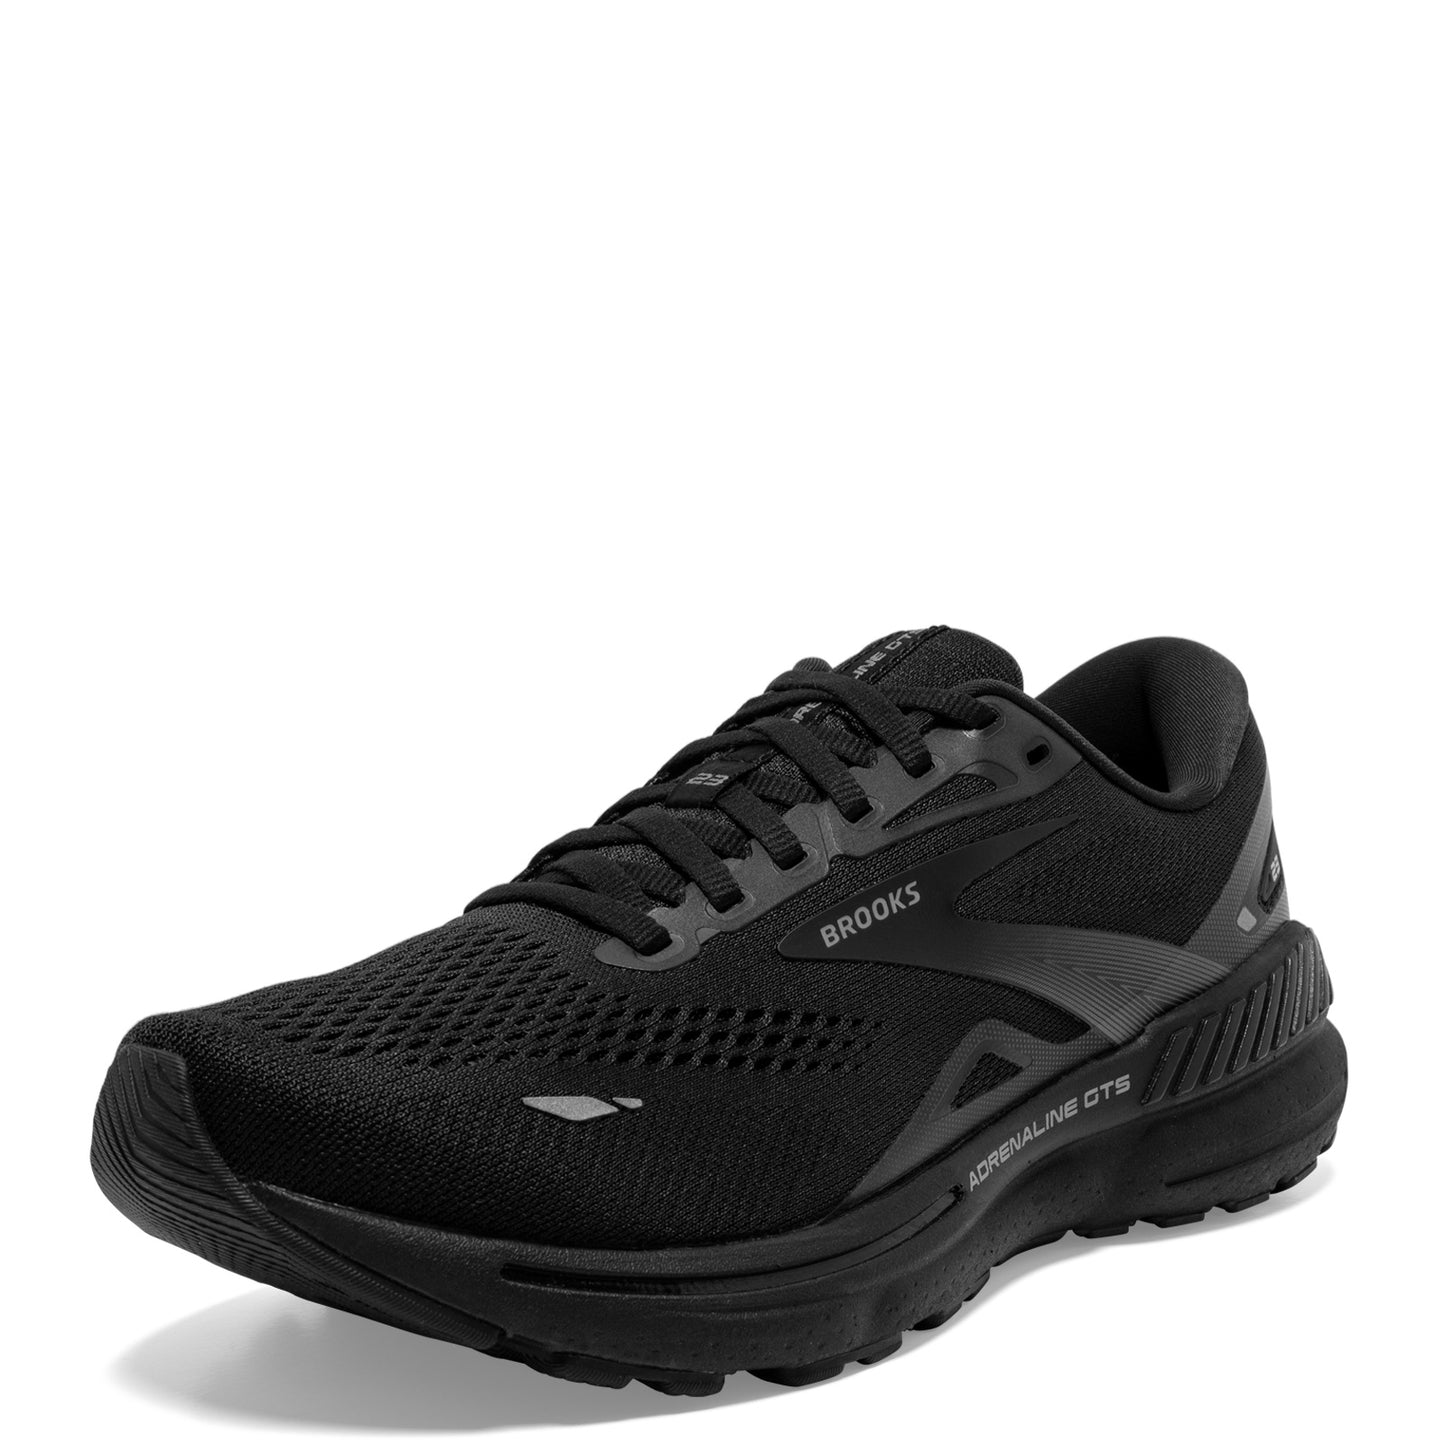 Peltz Shoes  Women's Brooks Adrenaline GTS 23 Running Shoe – Wide Width Black/Black/Ebony 120381 1D 020